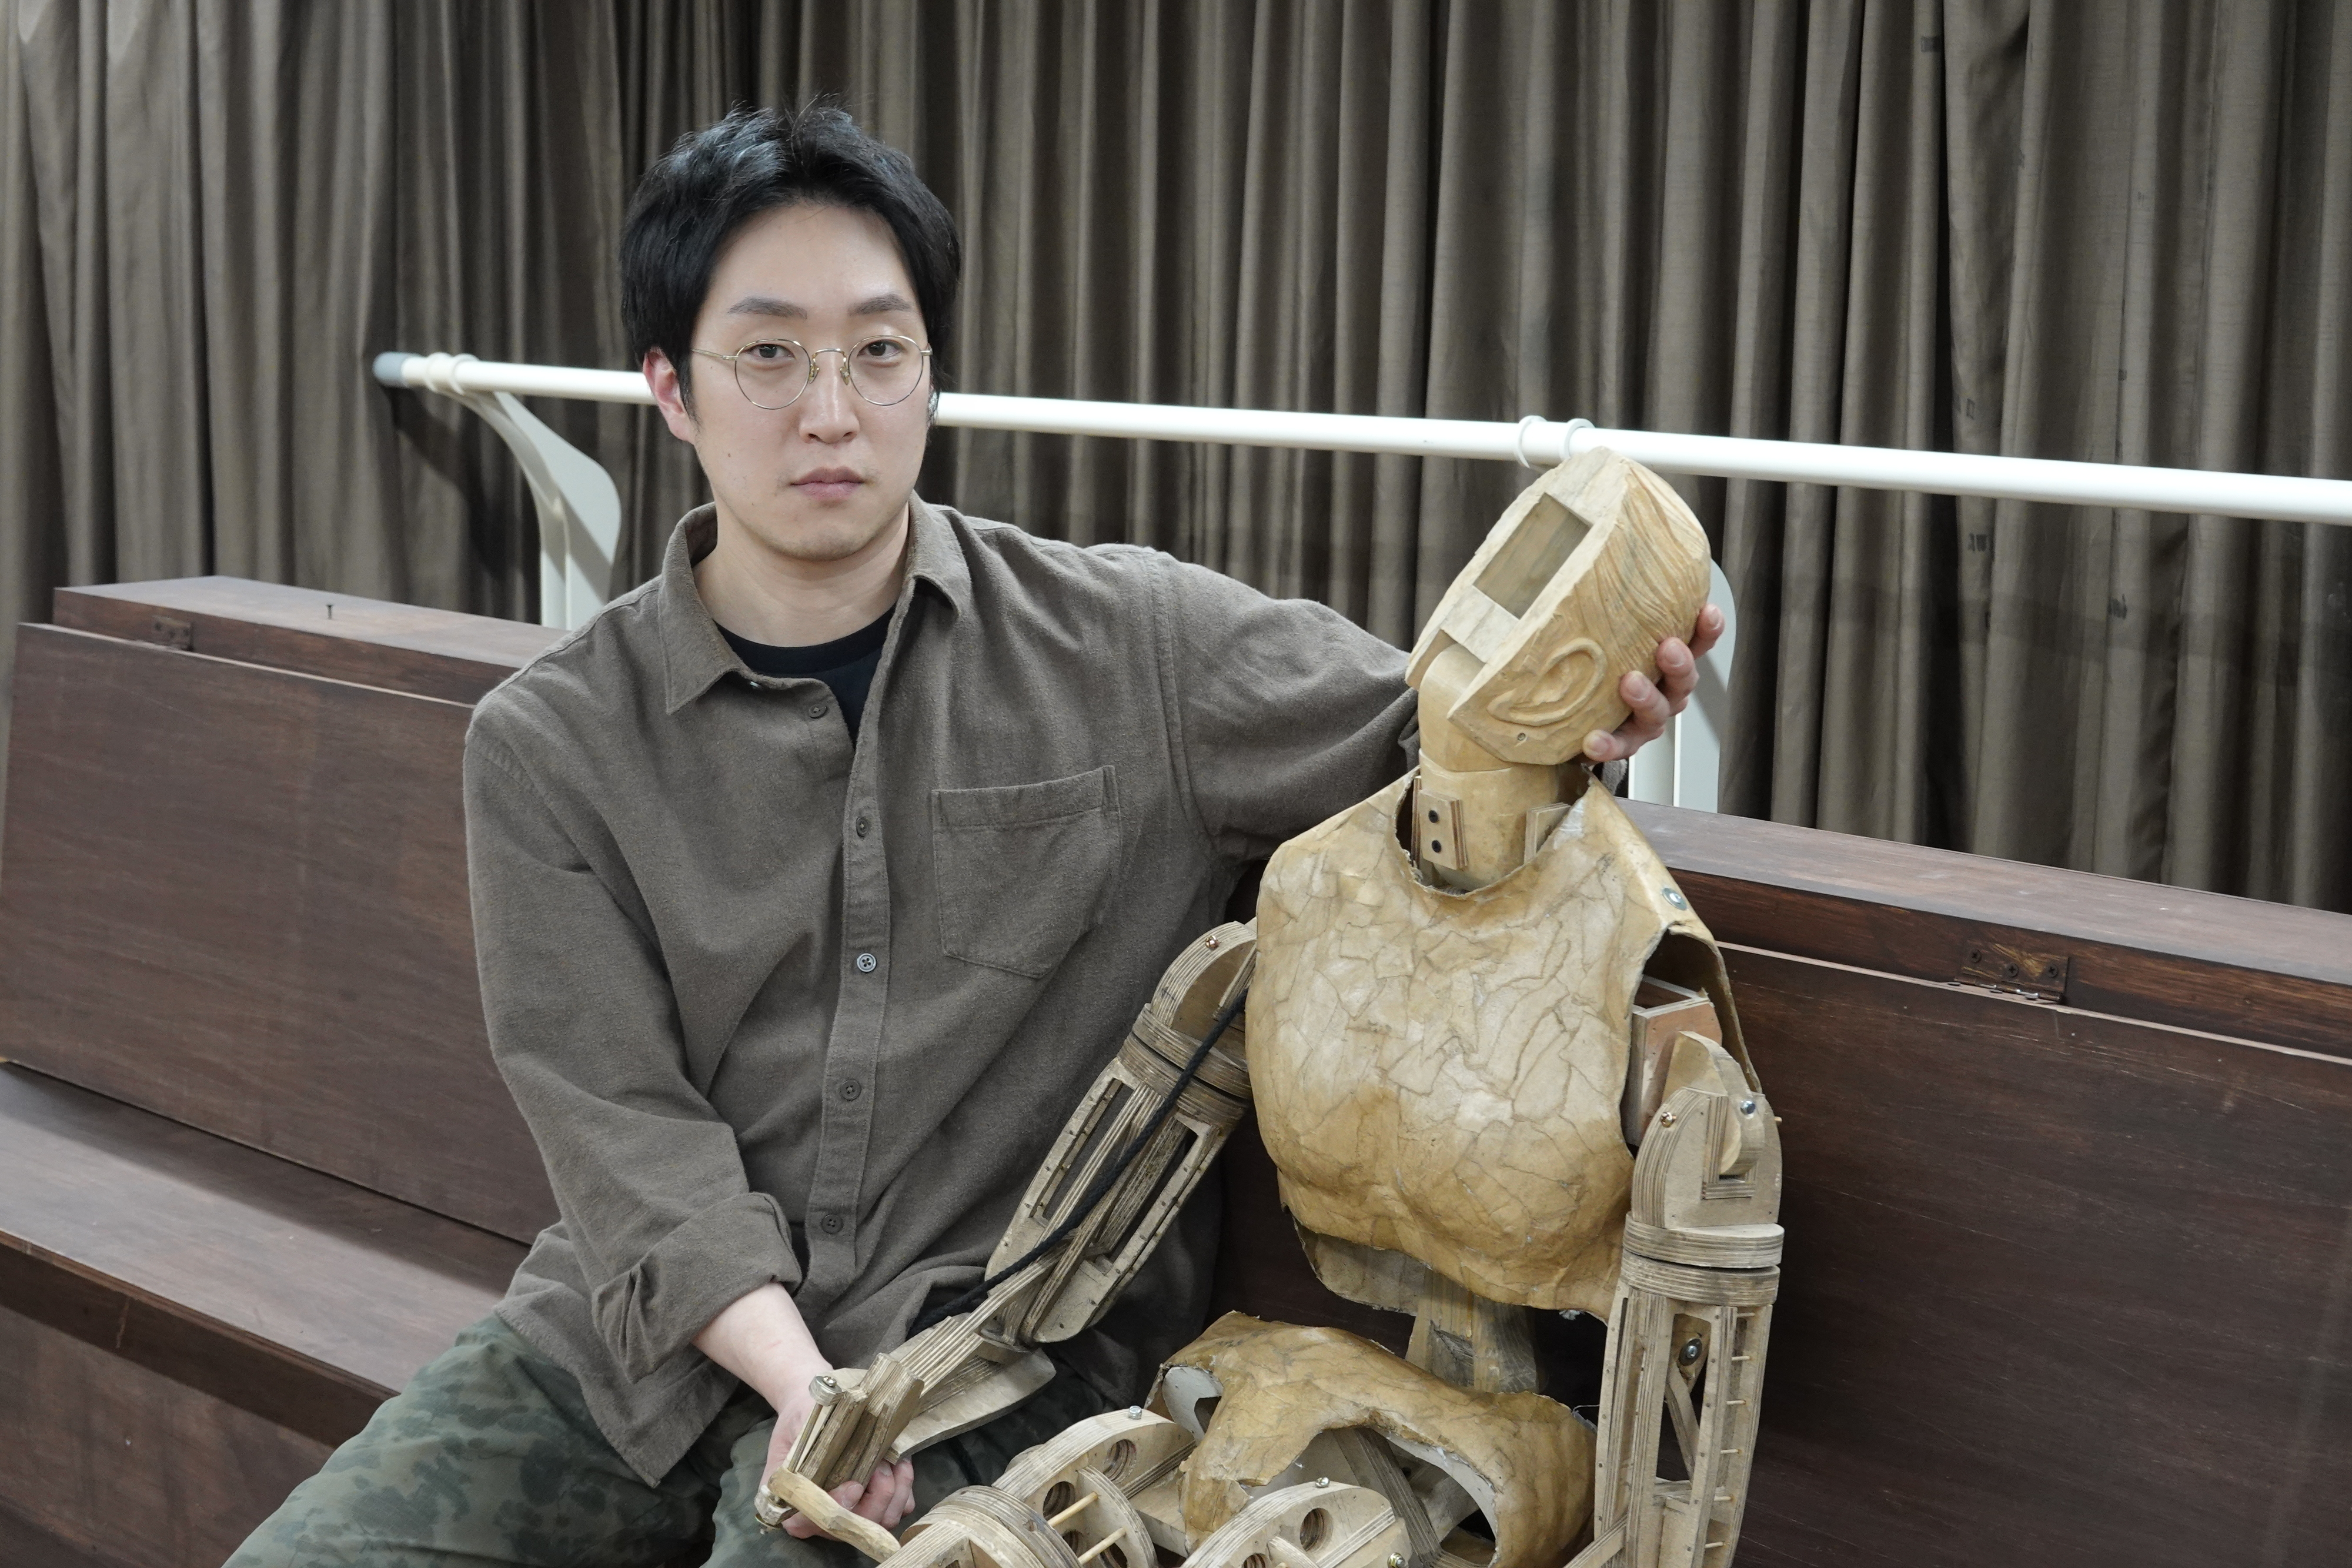 지난 12일 서울 종로구 두산아트센터 연습실에서 만난 인형극 연출가 이지형이 자신이 만든 인형의 목을 받치고 있다. 그는 “관절과 변화의 가능성을 품은 모든 존재는 인형”이라고 했다.